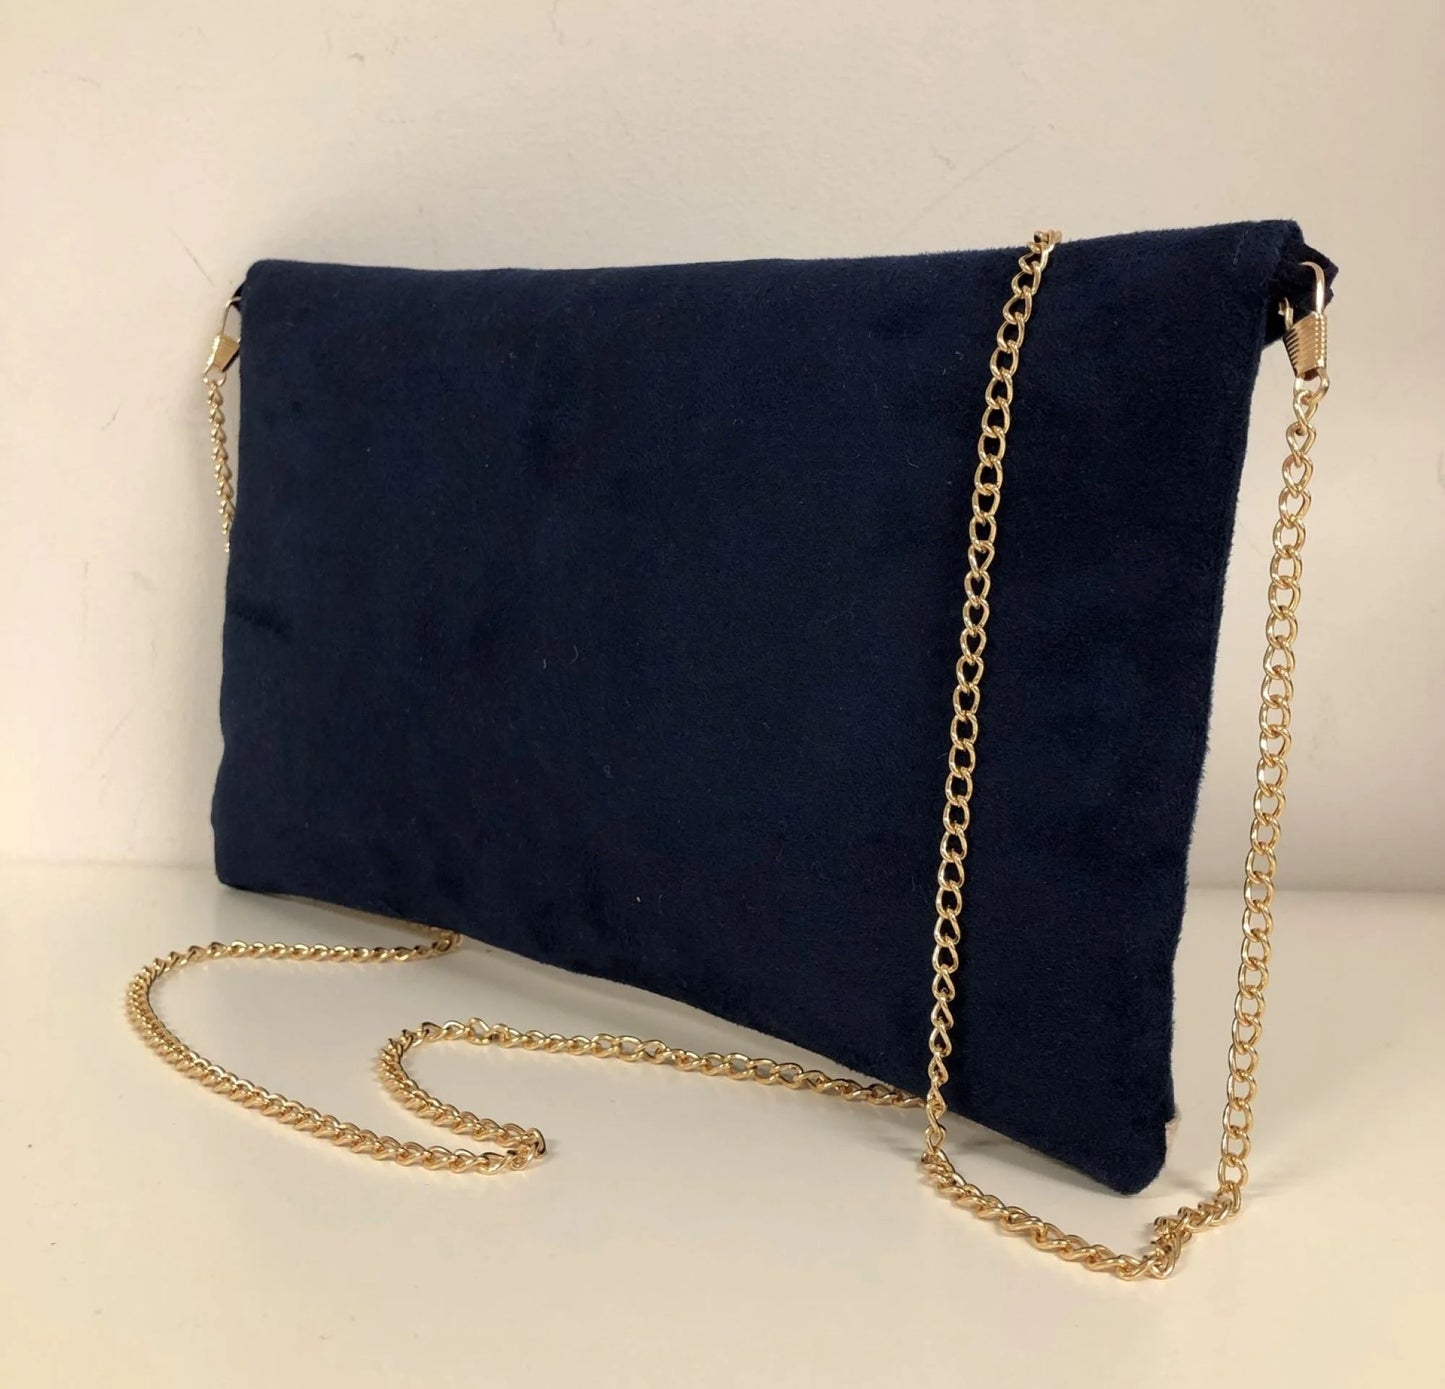 le sac pochette Isa bleu marine et orange à paillettes dorées, avec chainette amovible, vue de dos.